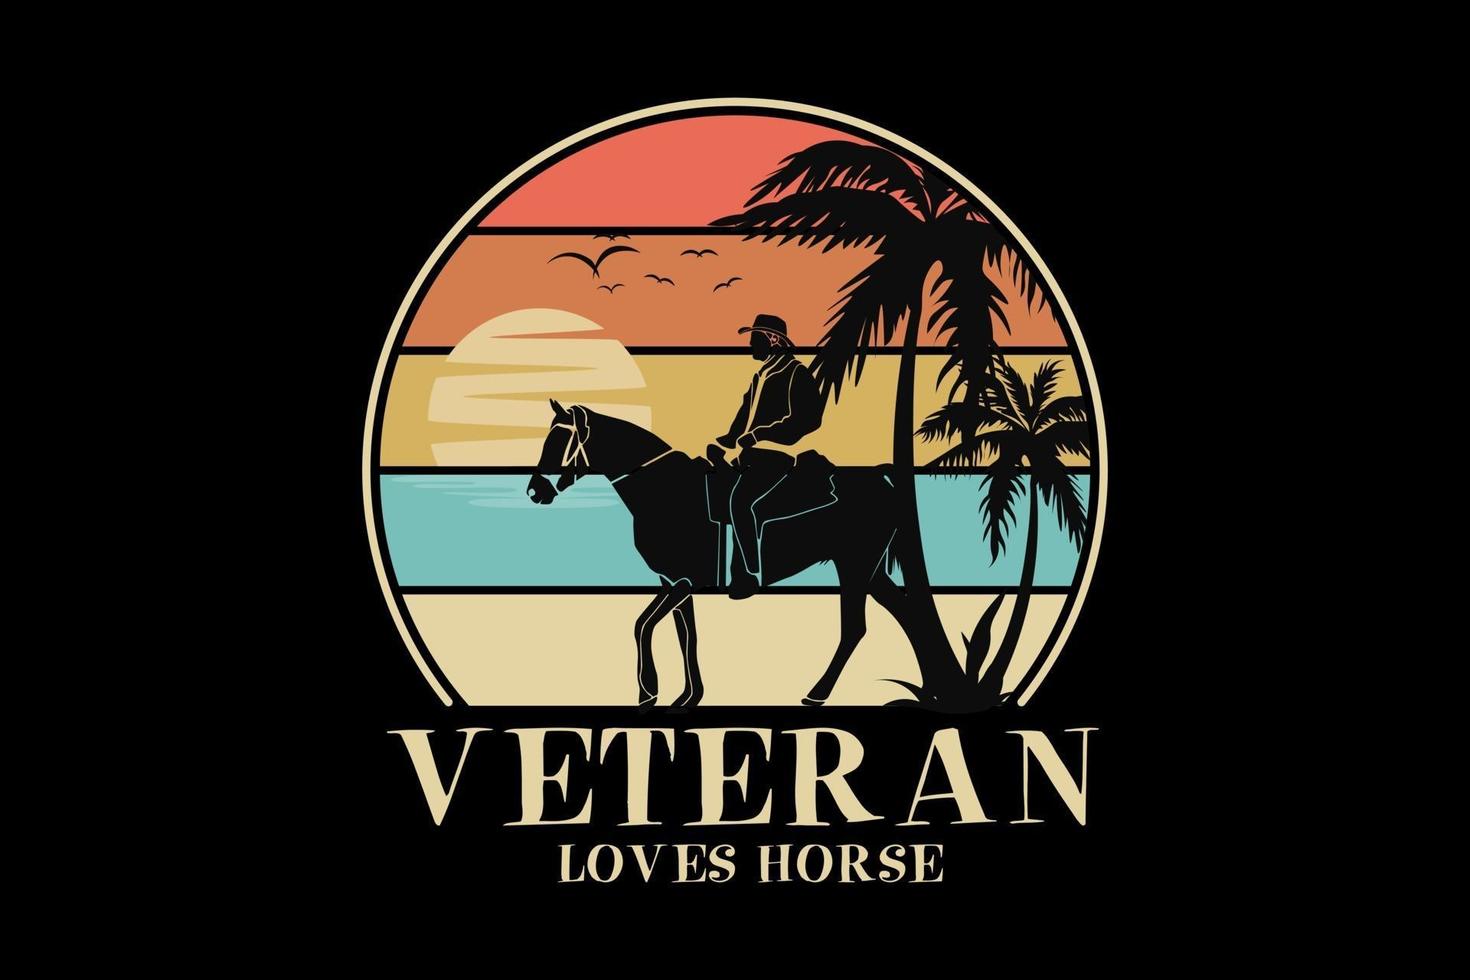 Veteran liebt Pferd, Design Silhouette Retro-Stil vektor